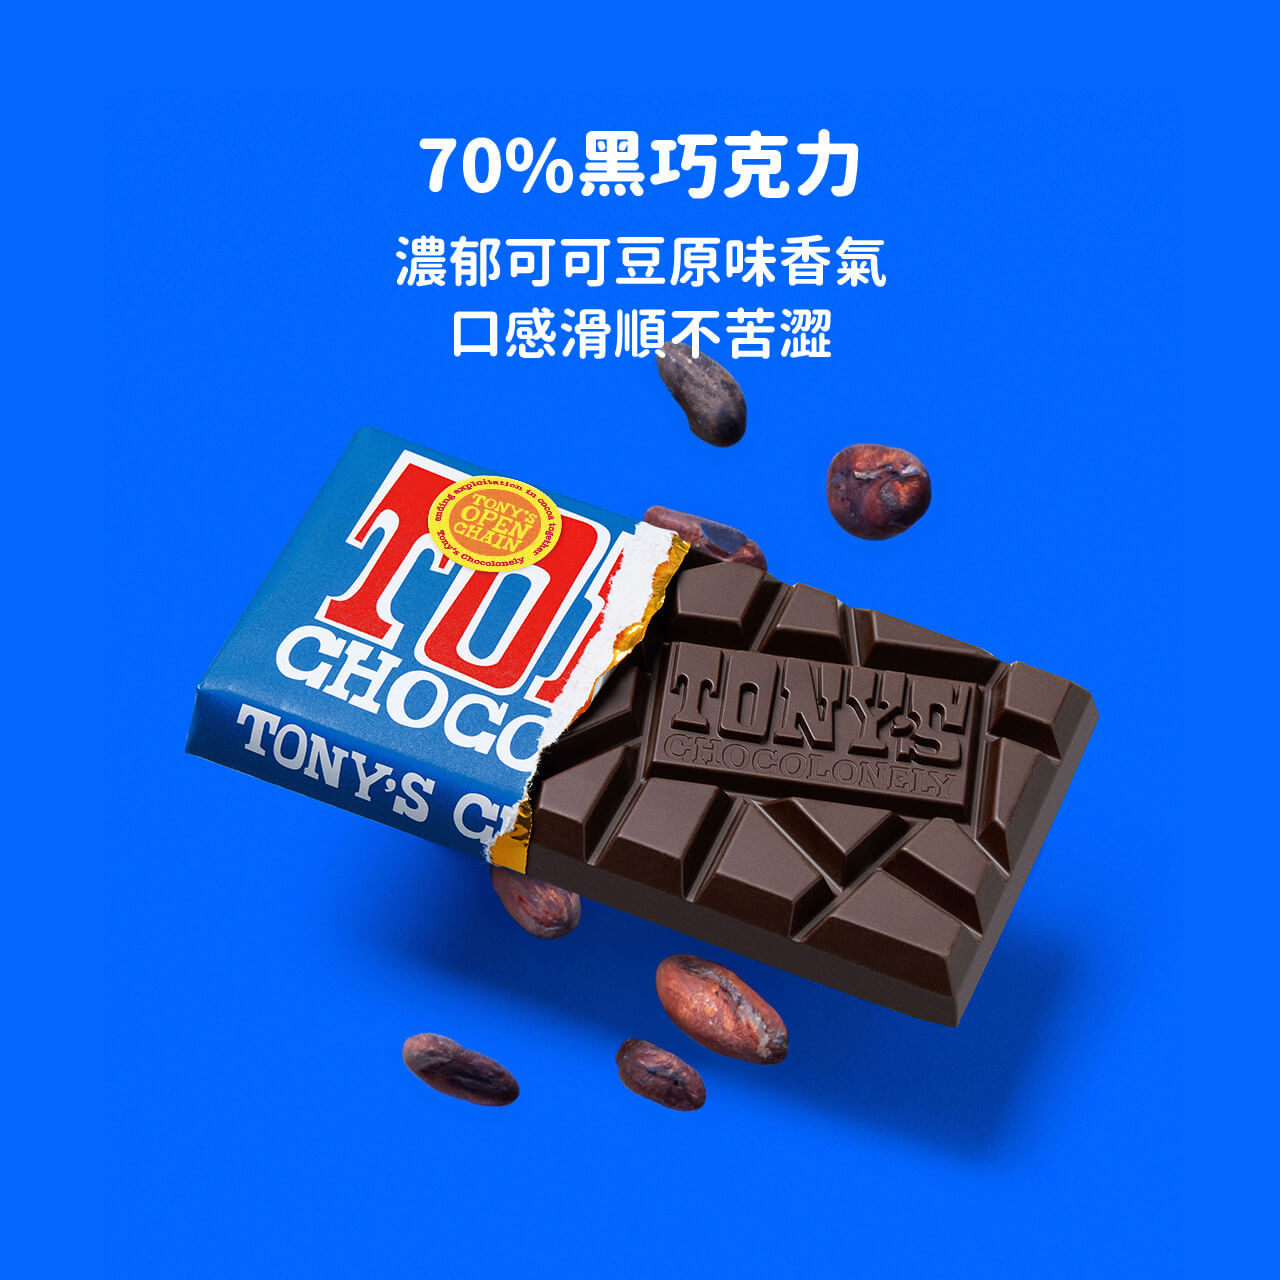 東尼巧克力,黑巧克力,70%巧克力